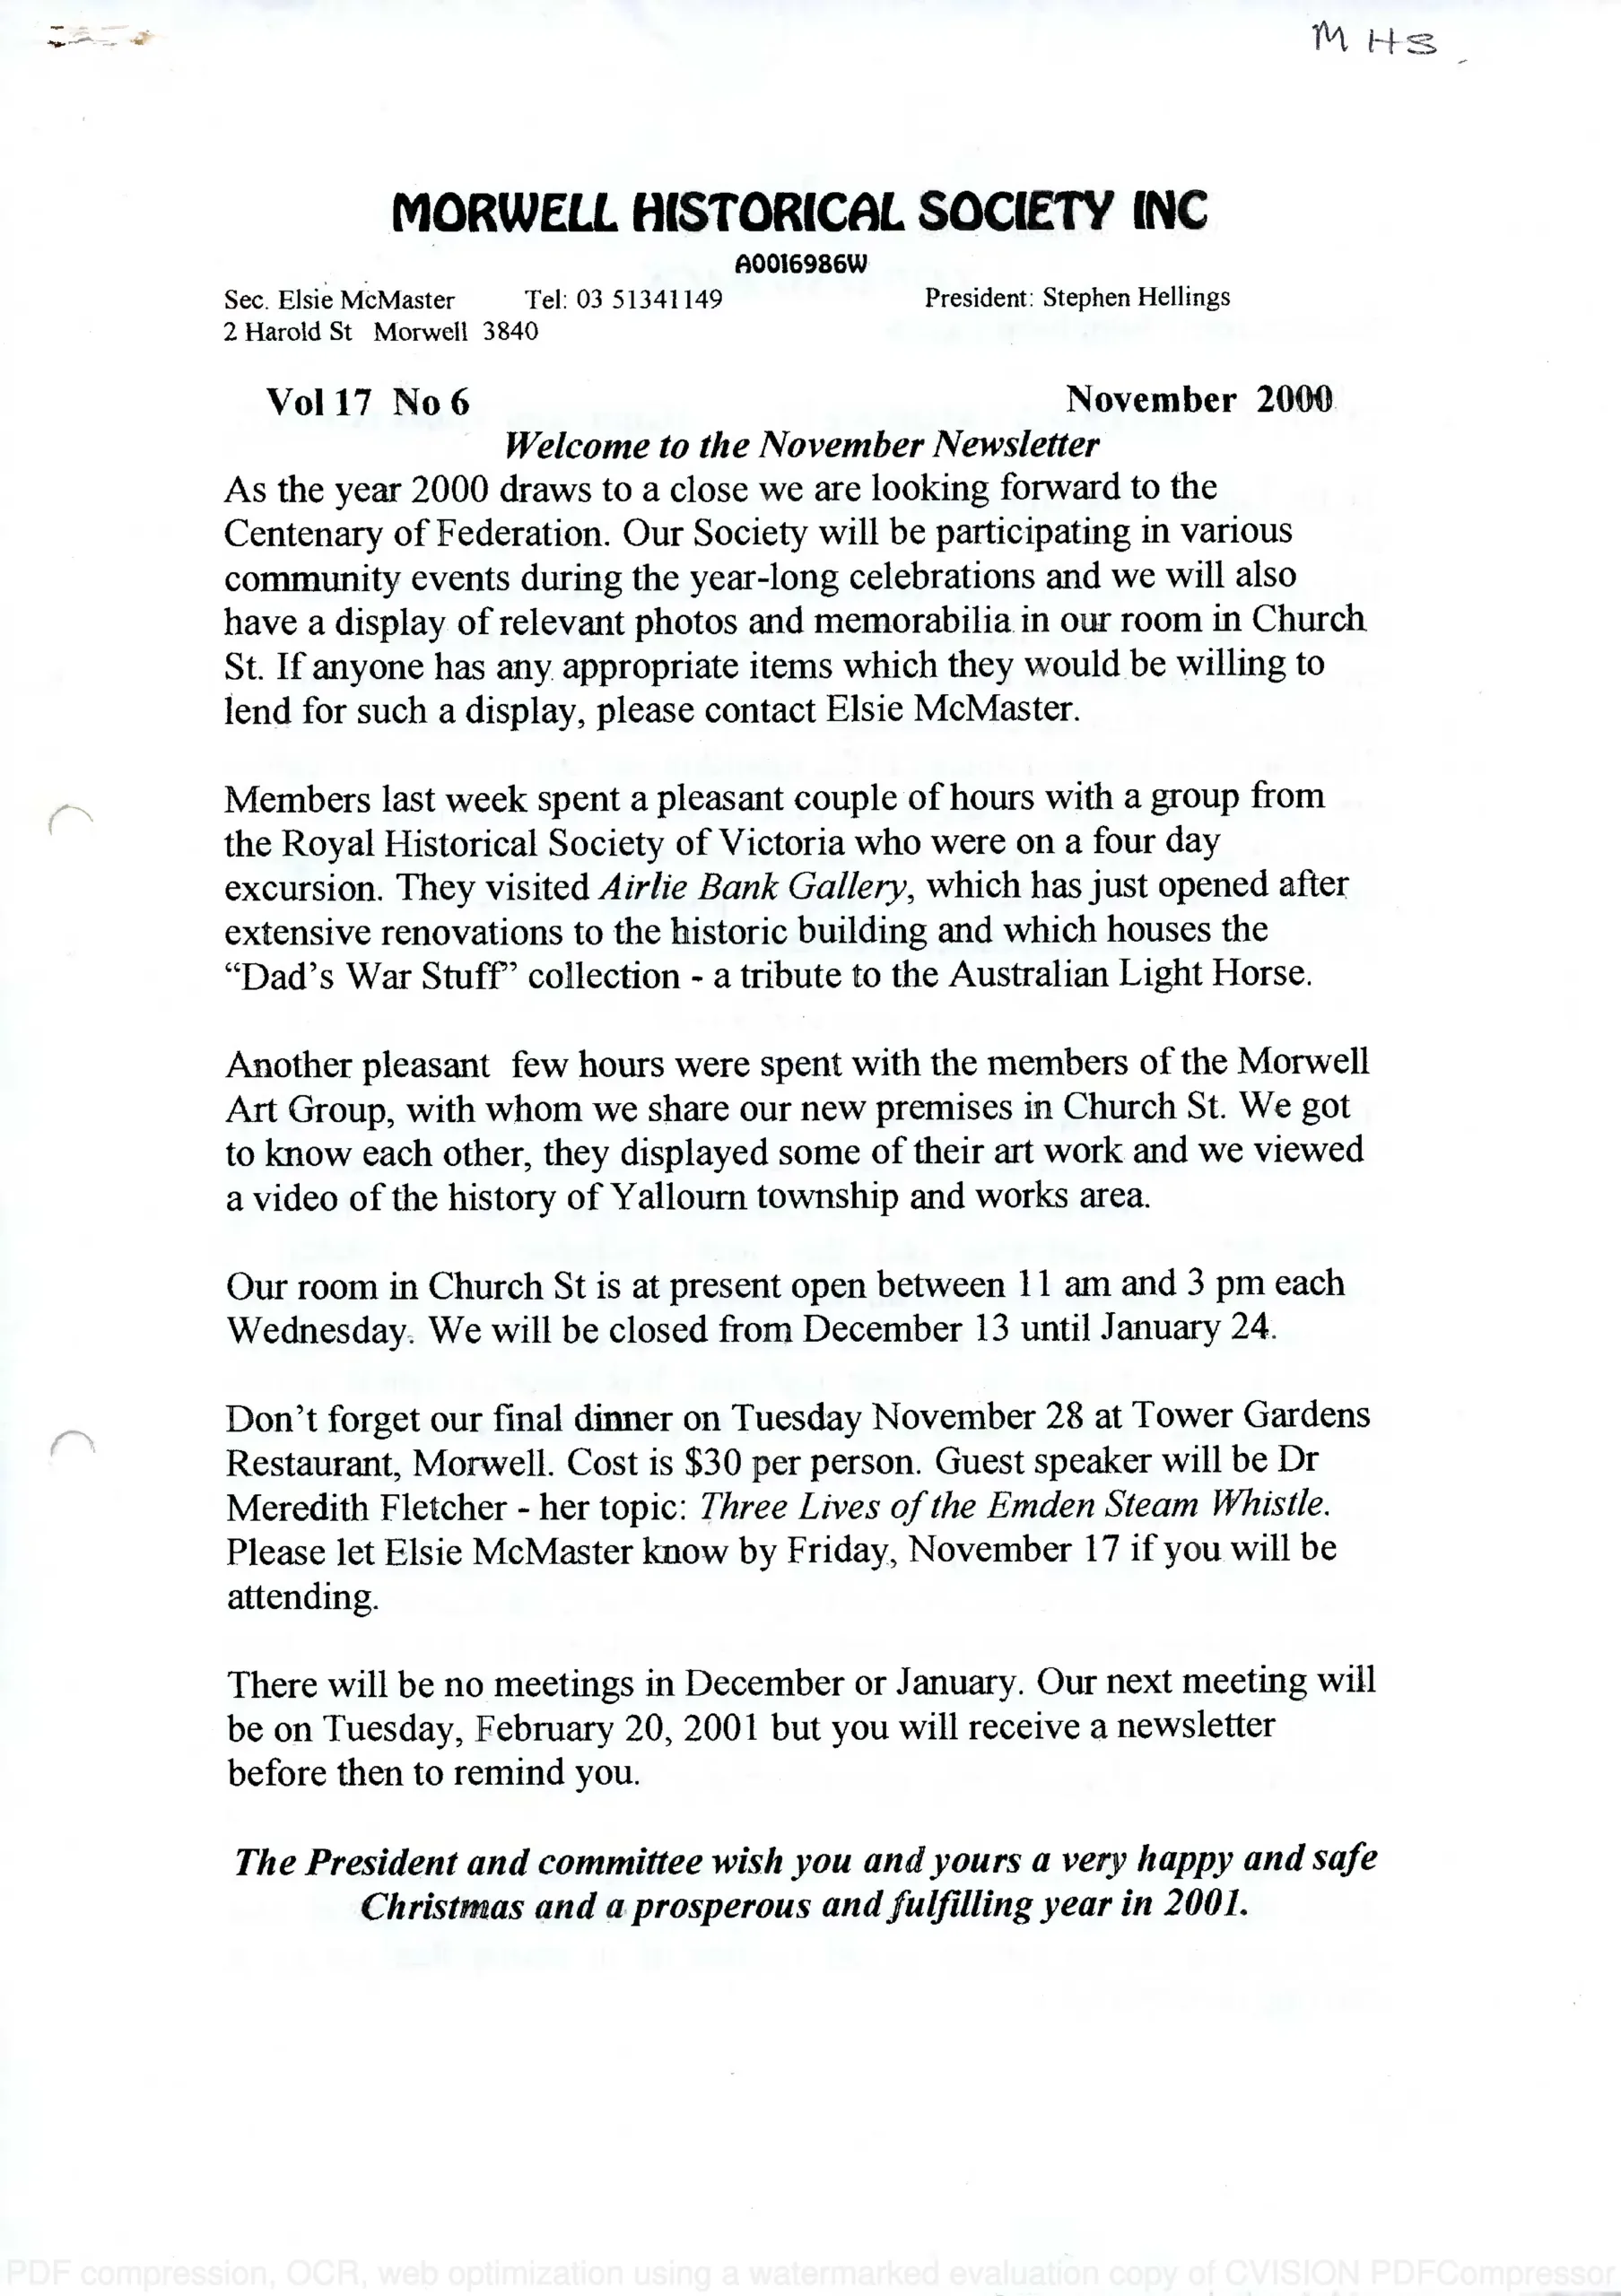 Newsletter November 2000